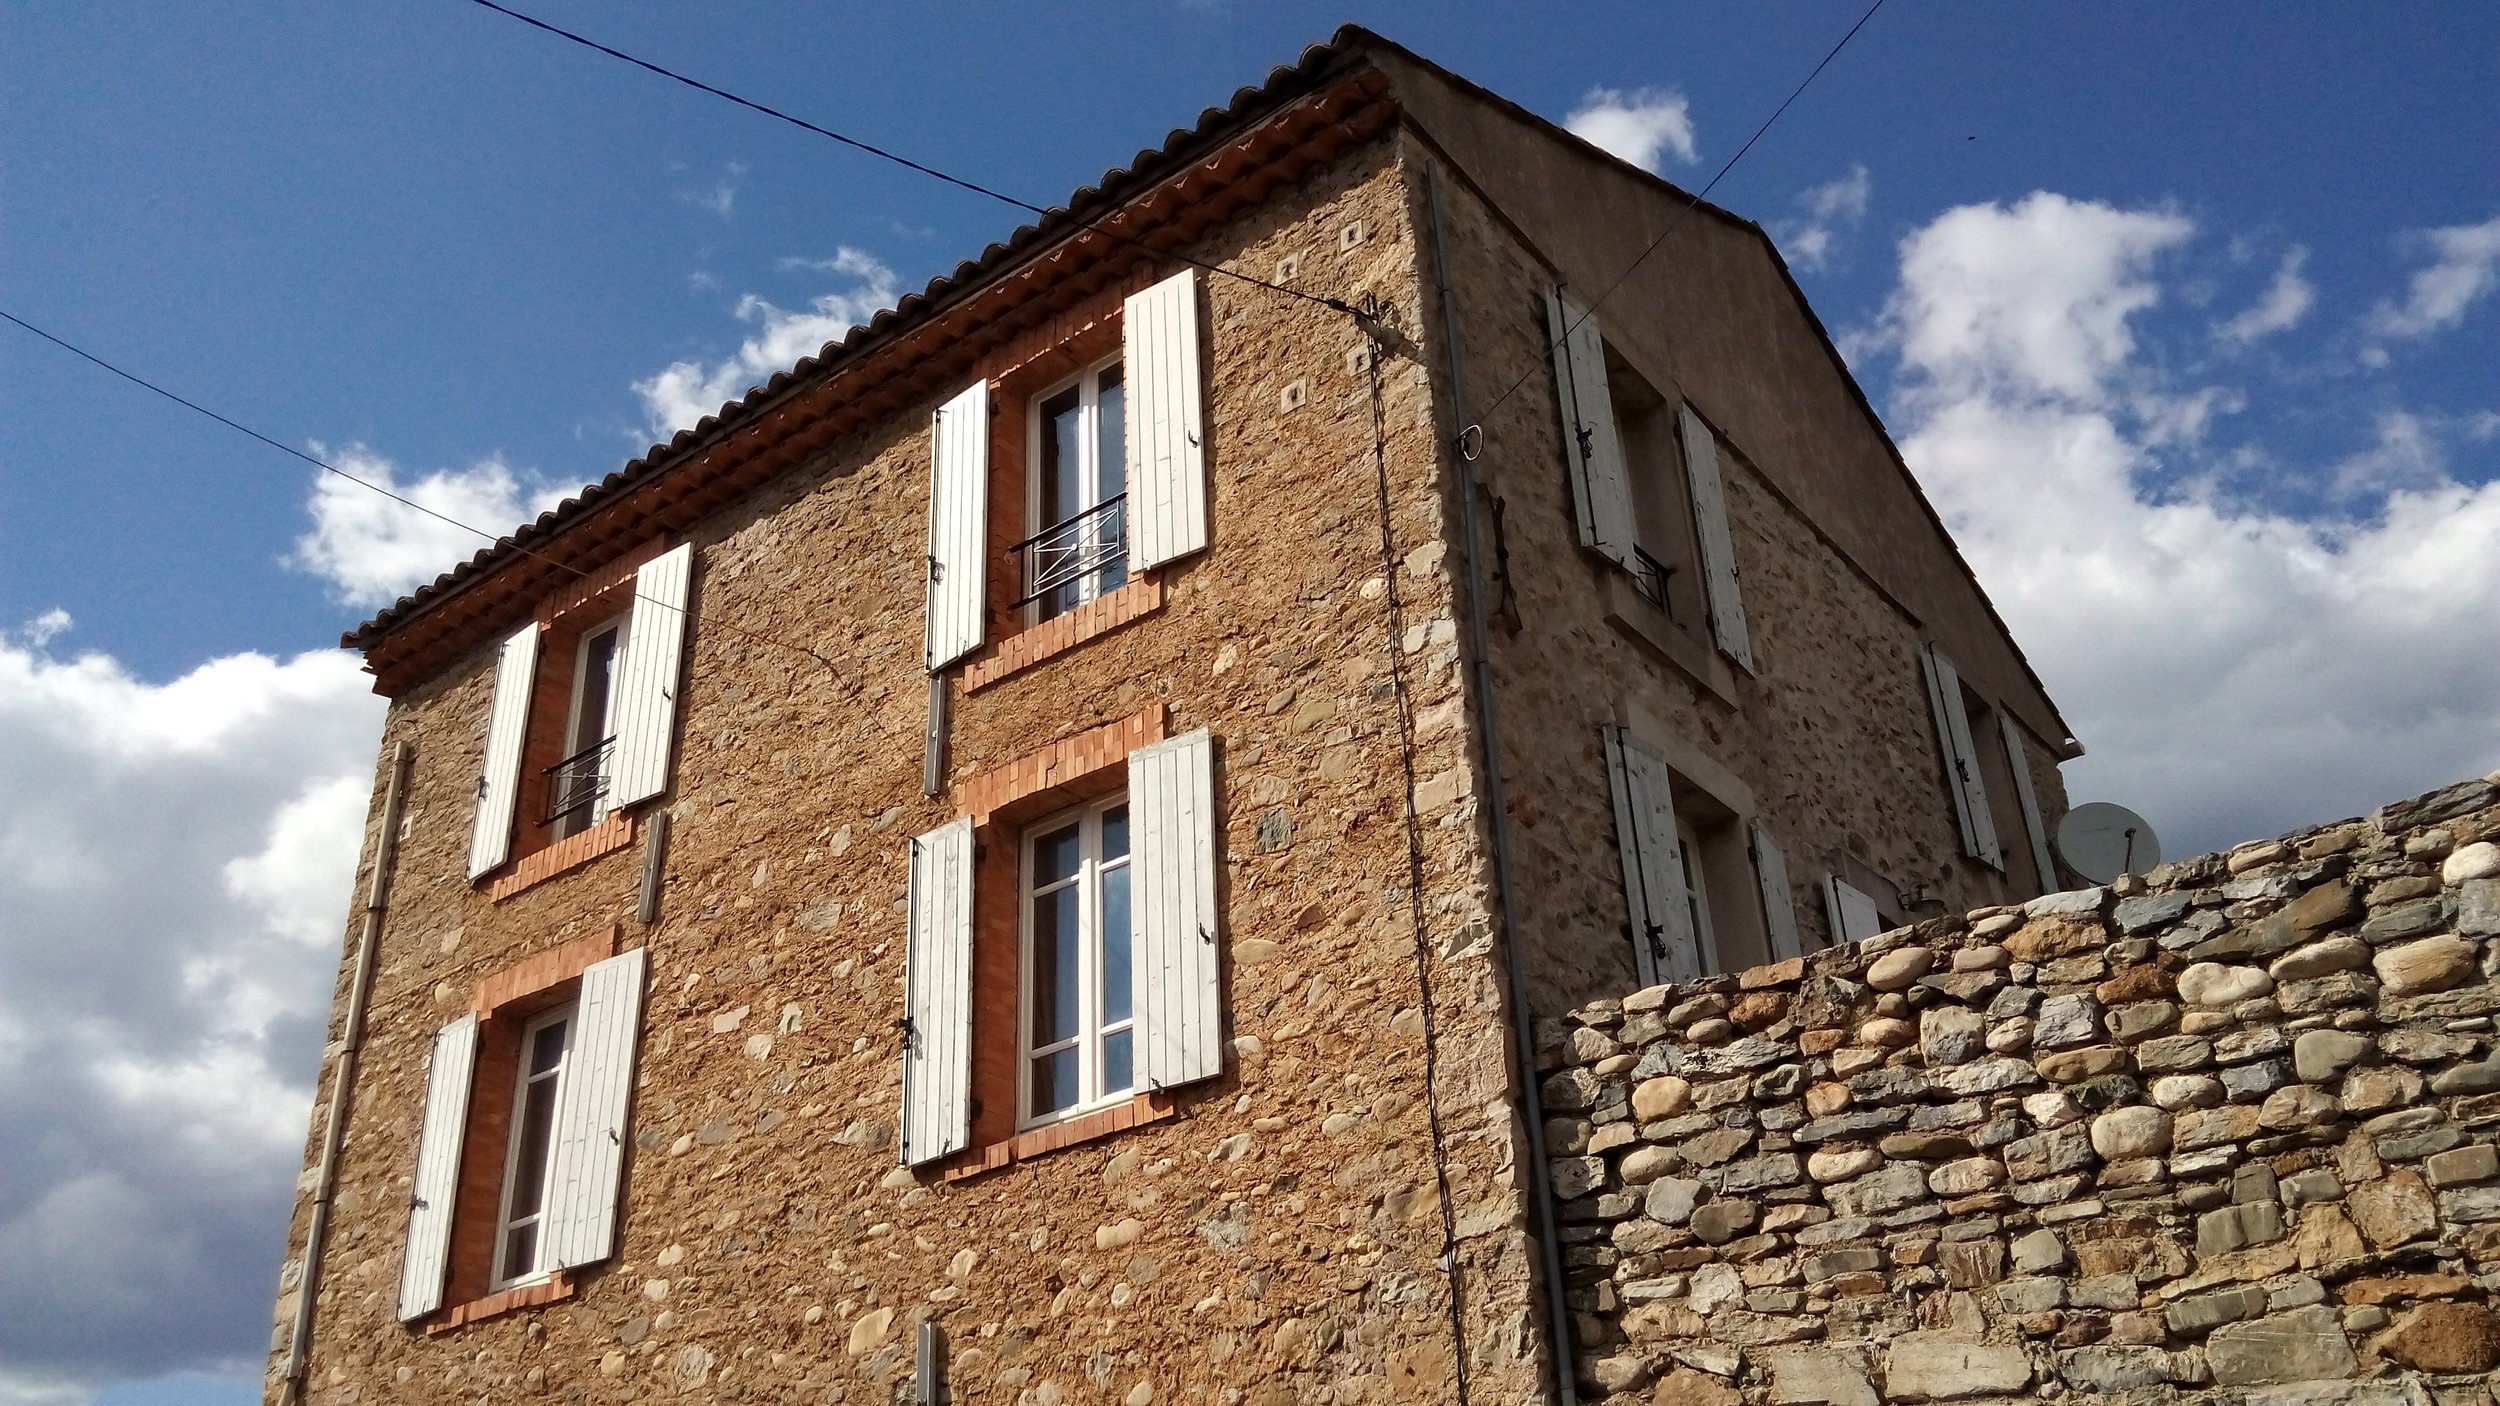 Street view of Le Haut Maison